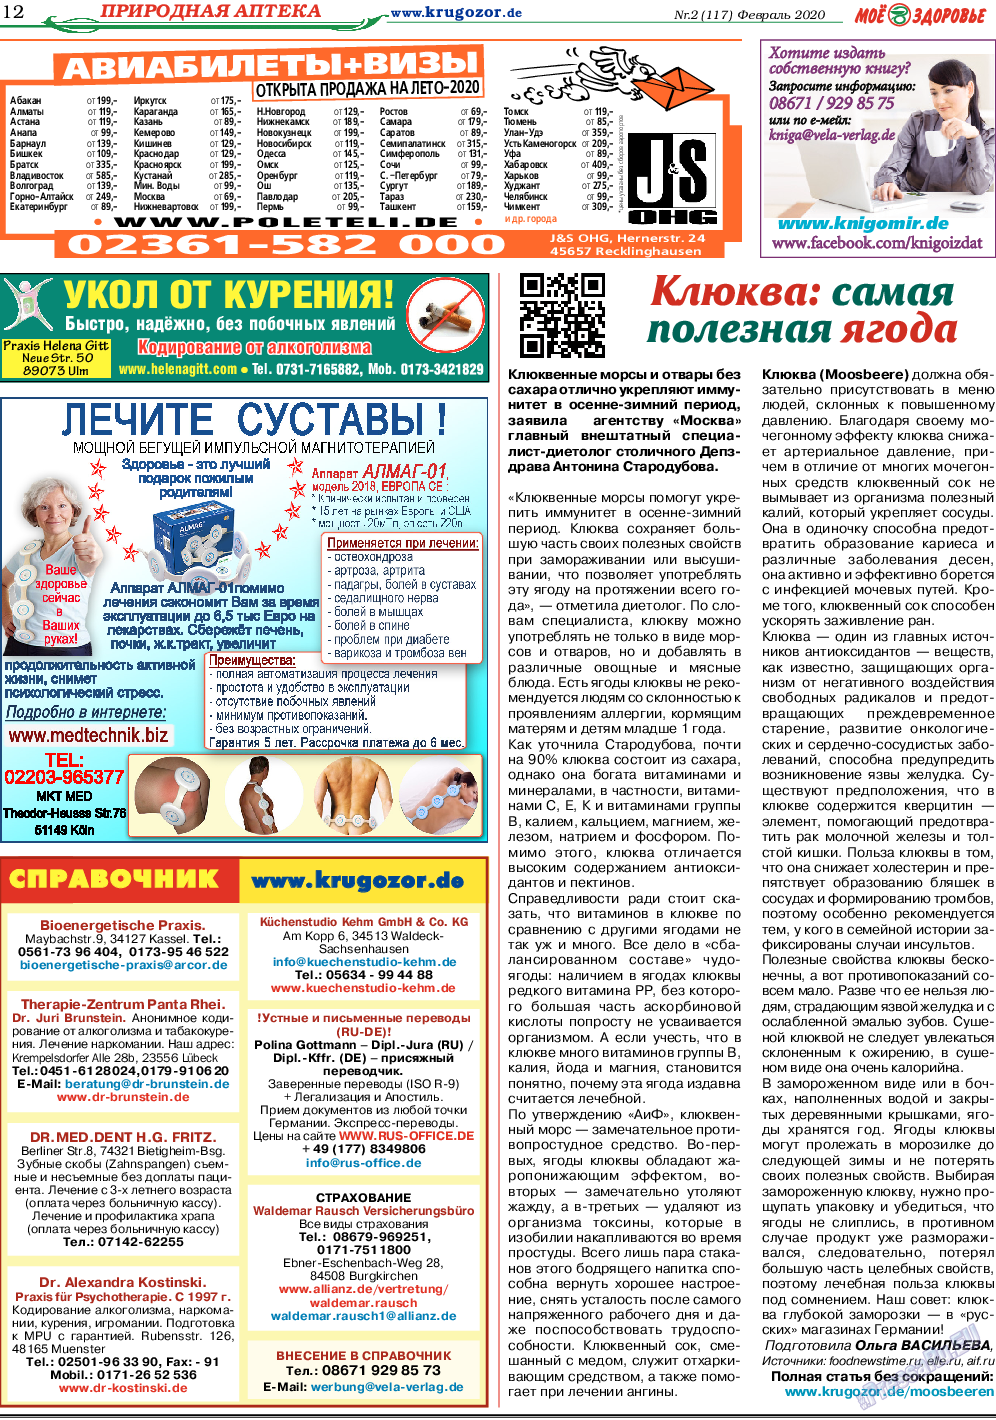 Кругозор, газета. 2020 №2 стр.12